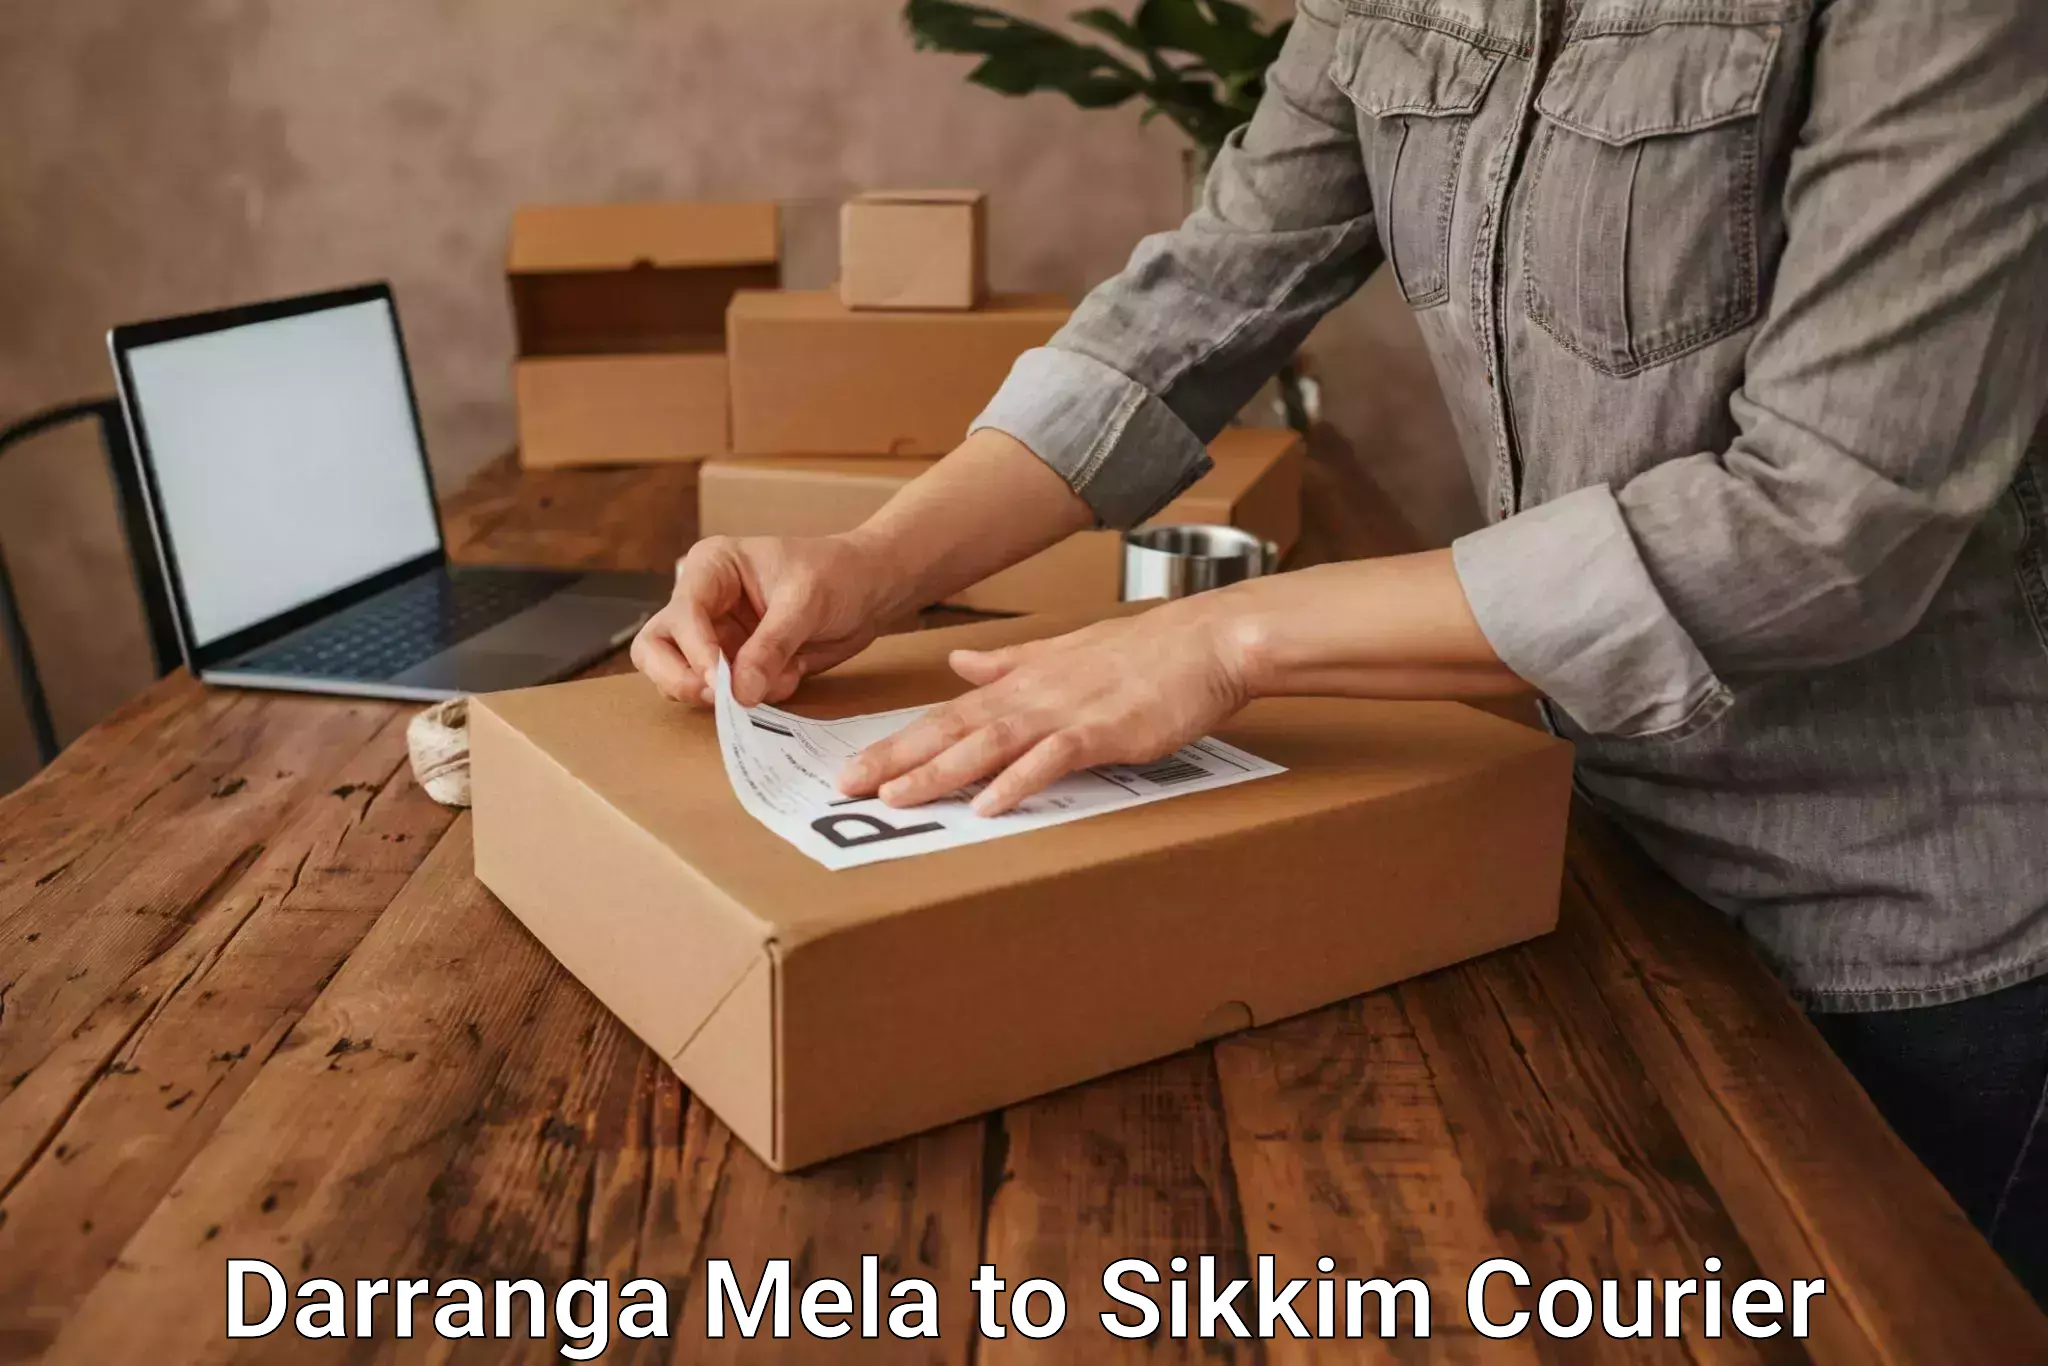 Multi-service courier options Darranga Mela to Gangtok